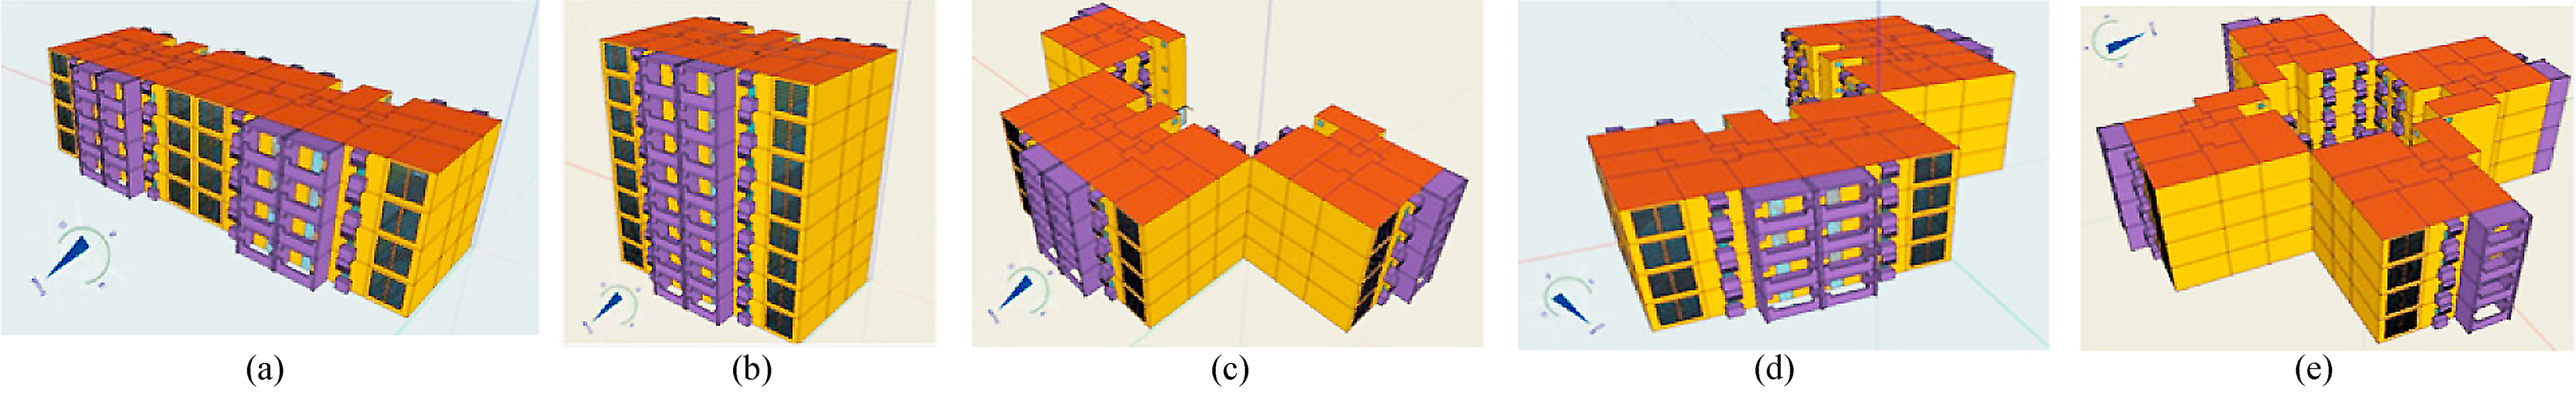 (a) Slab configuration, (b) pavilion configuration, (c) U shape, (d) L shape, and (e) courtyard configuration [18].